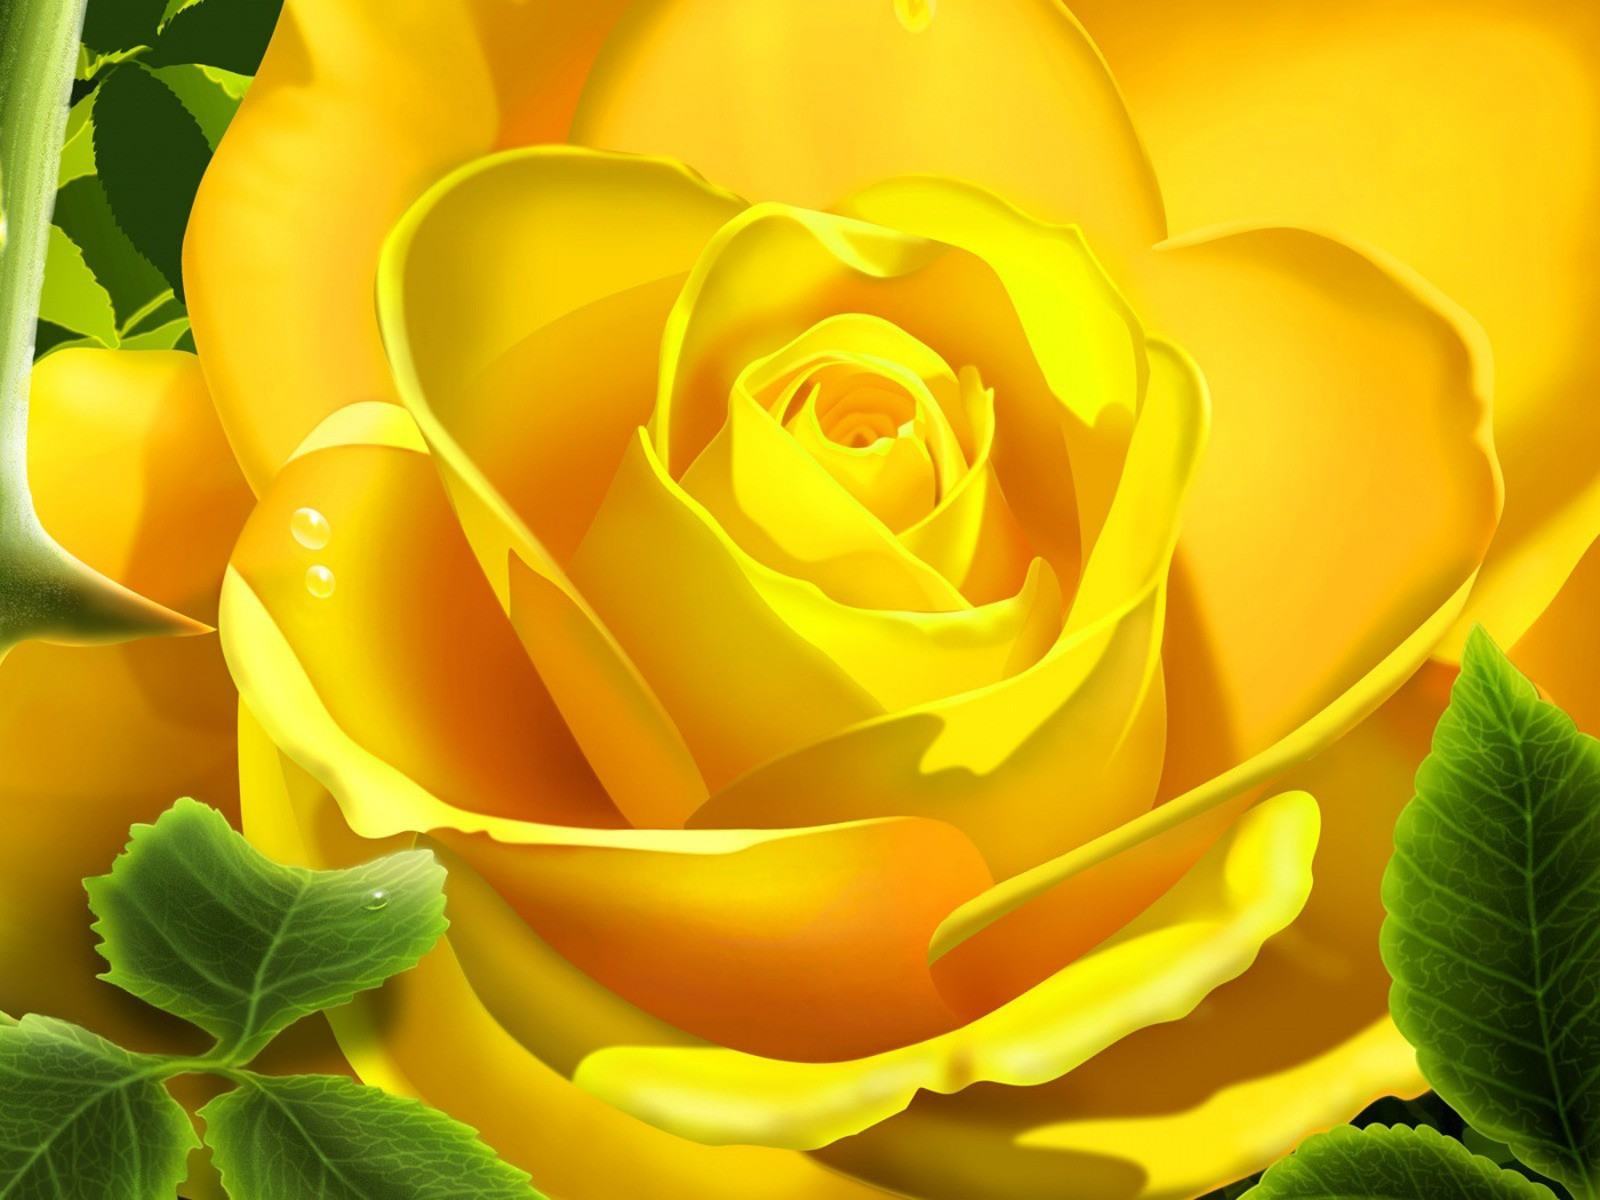 Hình ảnh hoa hồng vàng được chụp cận cảnh, với độ phân giải cao và ánh sáng tinh tế, sẽ khiến bạn say đắm bởi sự tươi sáng và ấm áp của những bông hoa đầy ý nghĩa này. Hãy để hình ảnh đưa bạn đến với thế giới mộc mạc và đẹp đẽ của hoa hồng vàng.